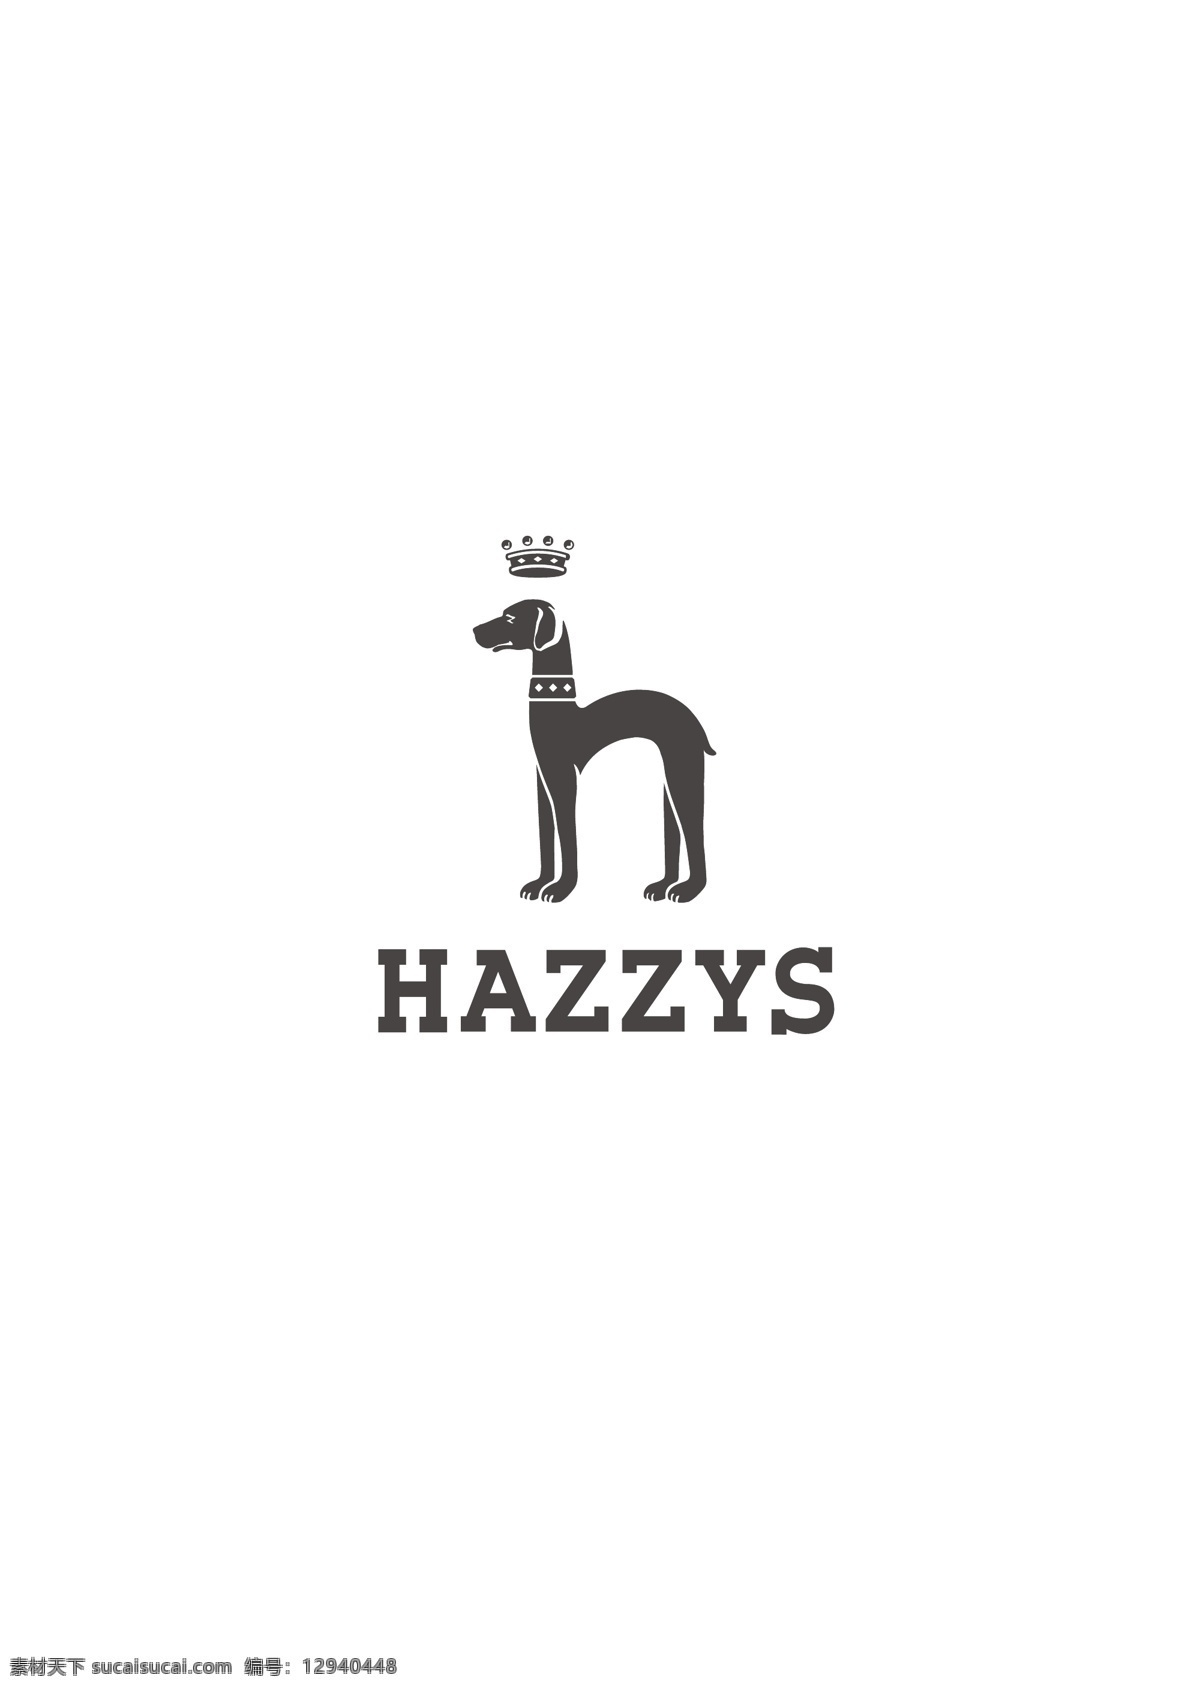 hazzys 标志 服饰品牌 服饰品牌标志 哈吉斯 logo设计